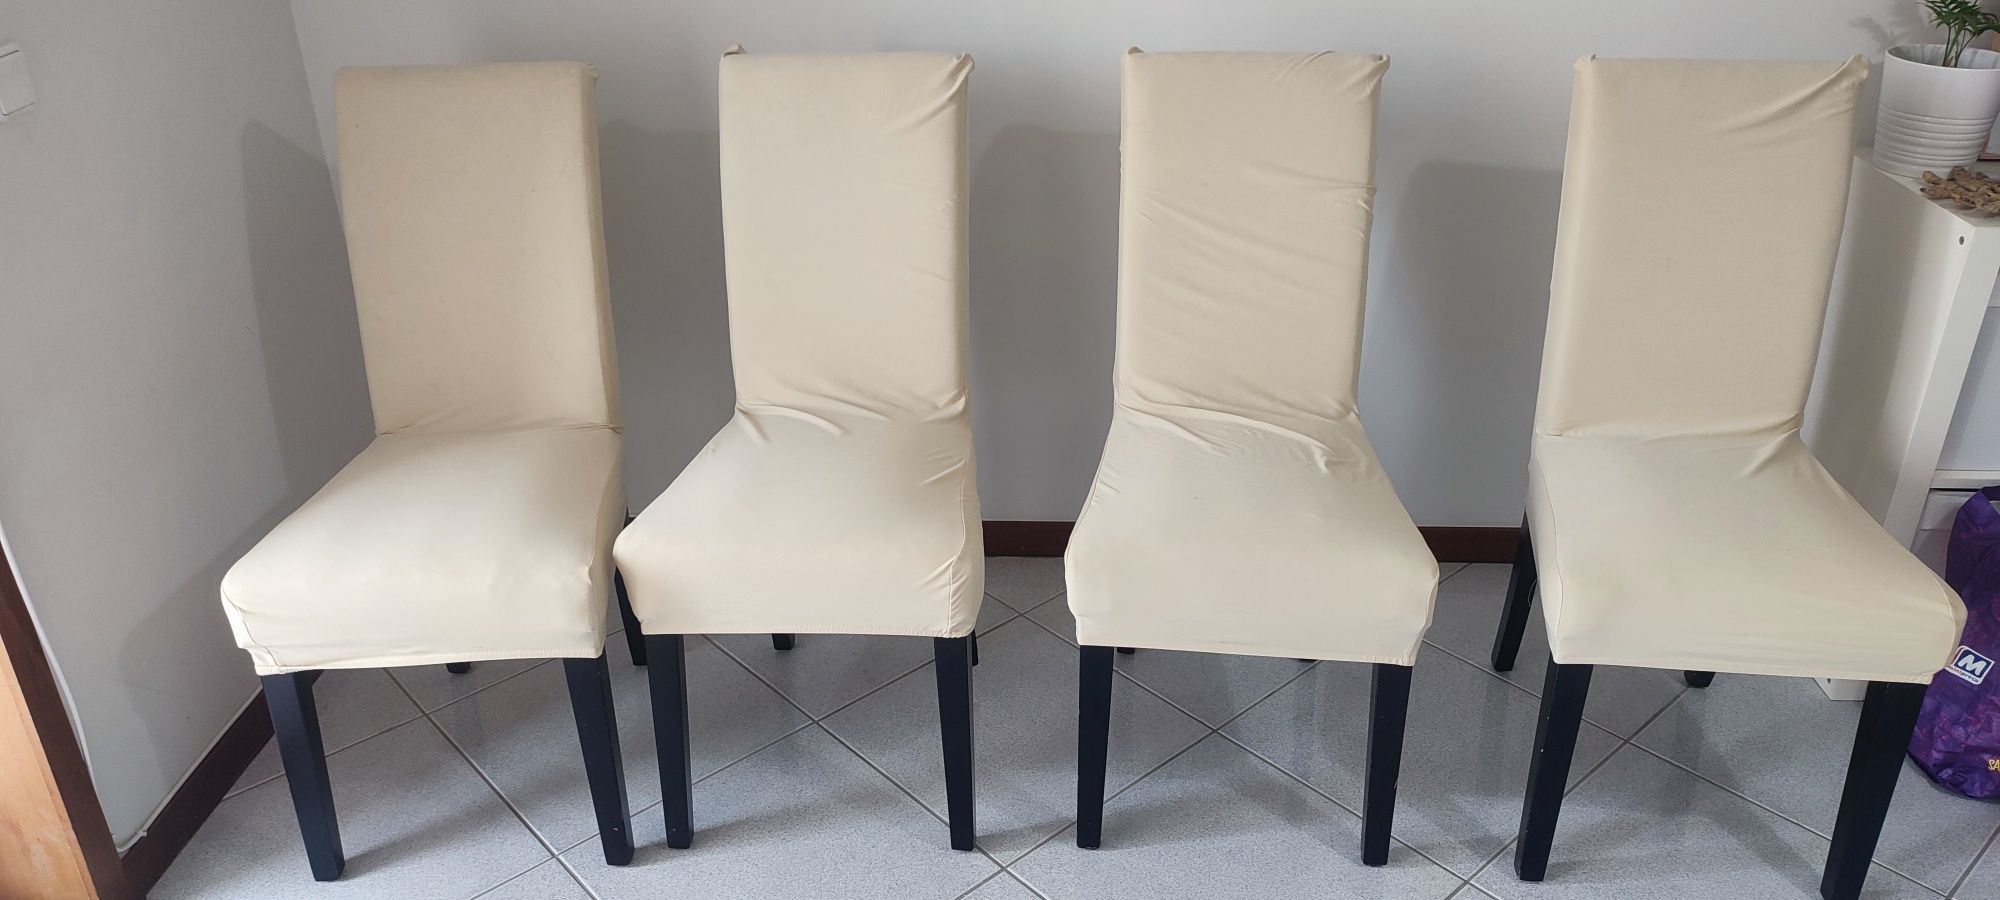 4 x Cadeiras pele sintética bege